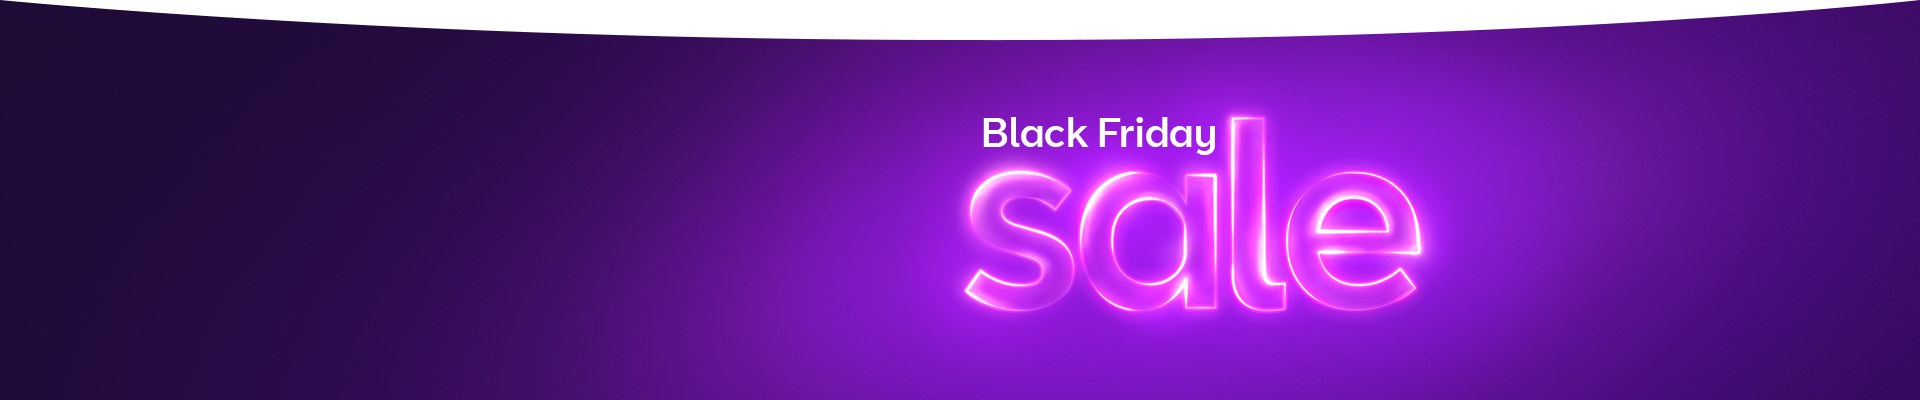 BT Black Friday fibre broadband sale